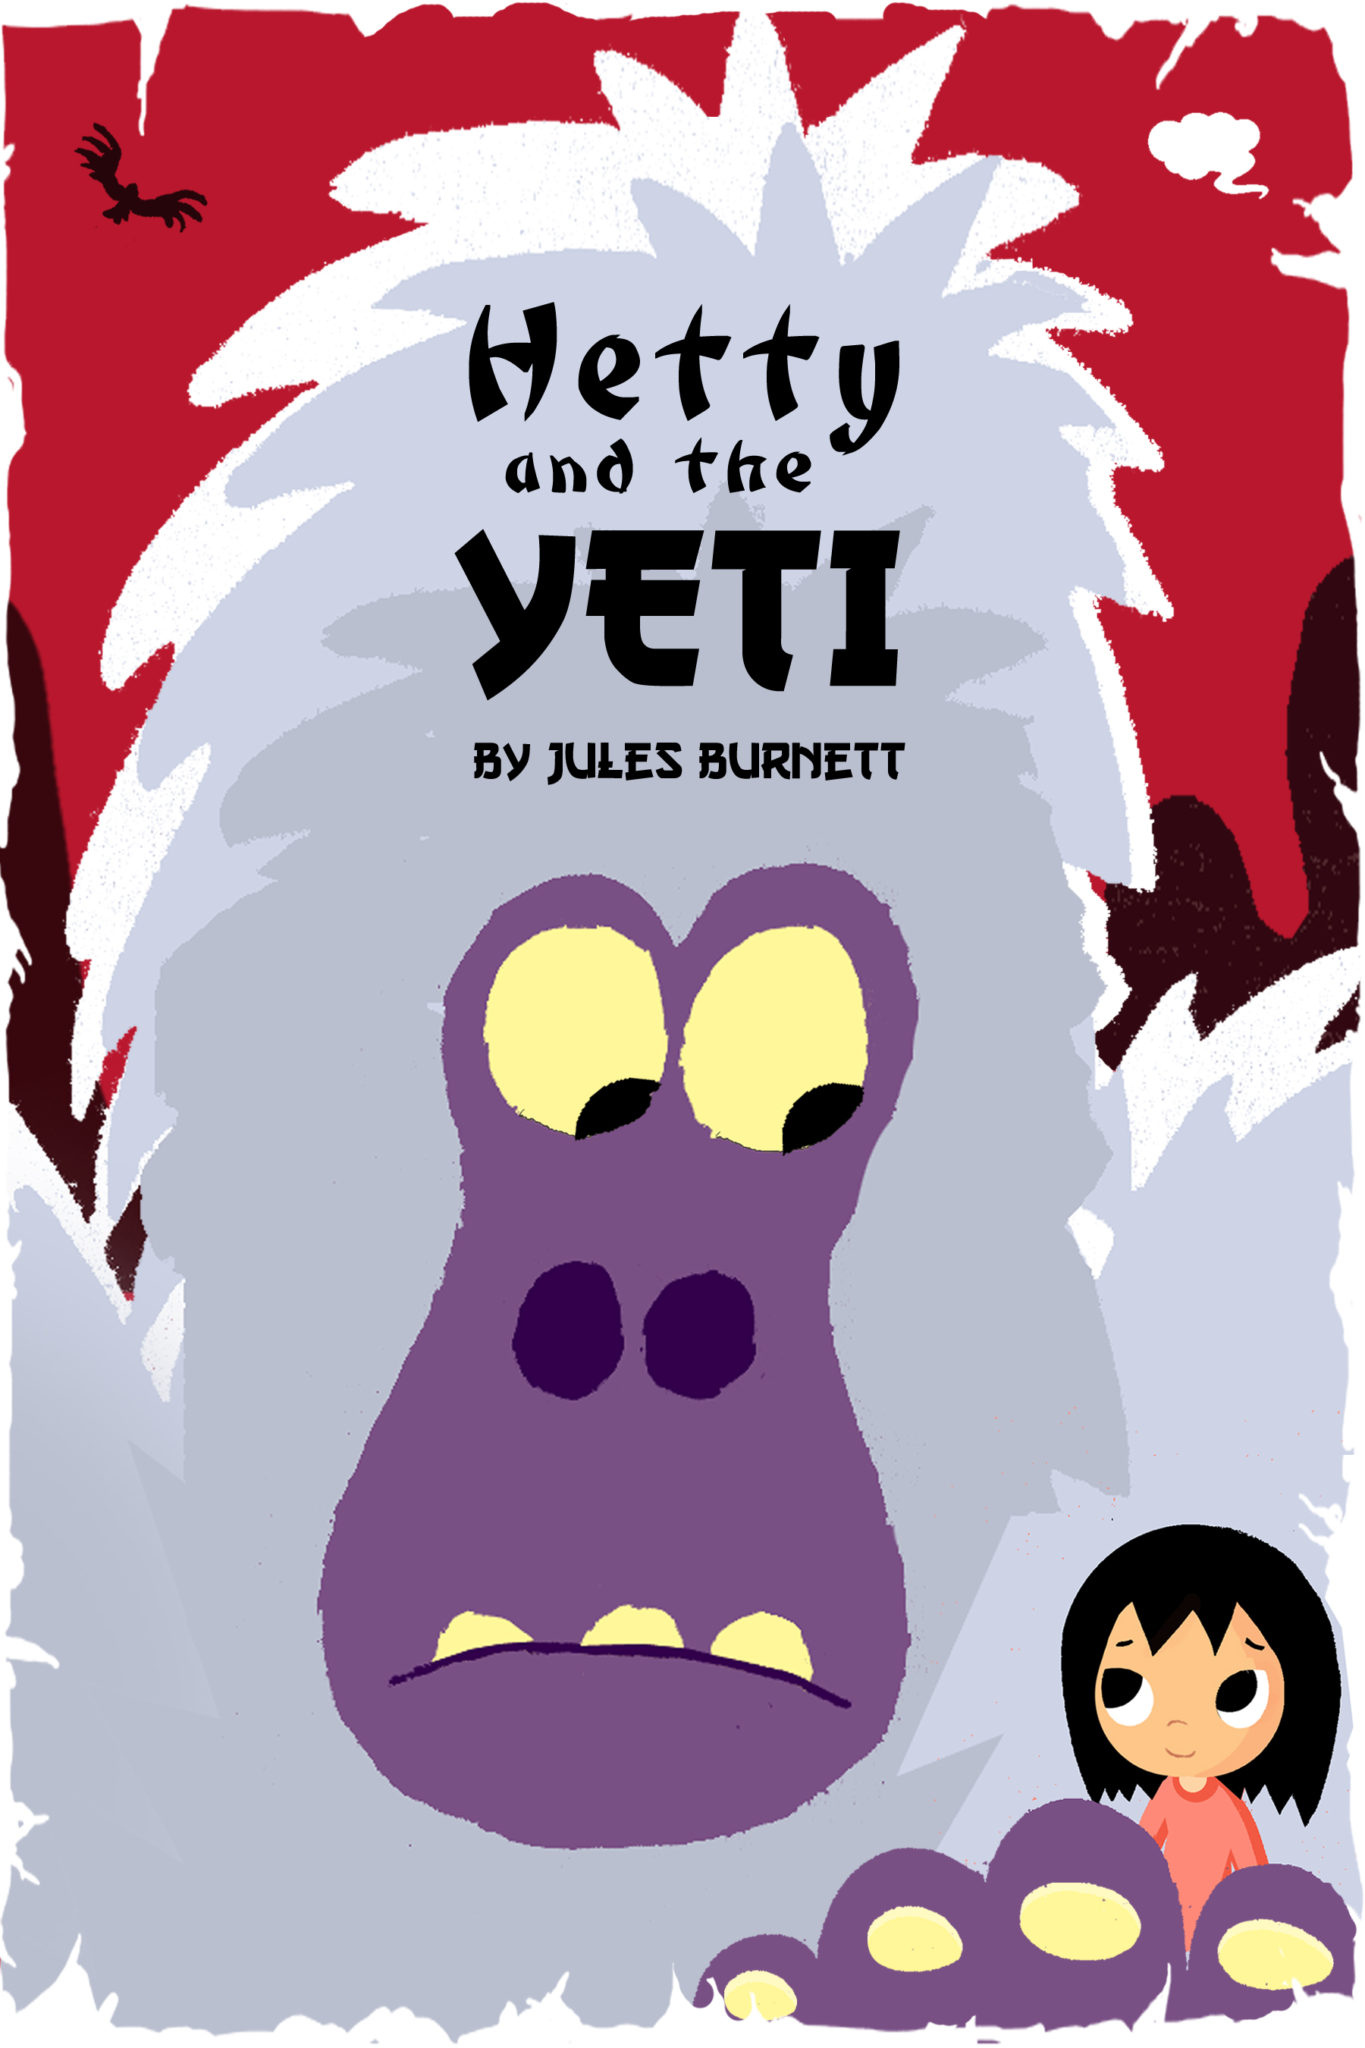 Hetty and the Yeti by Jules Burnett